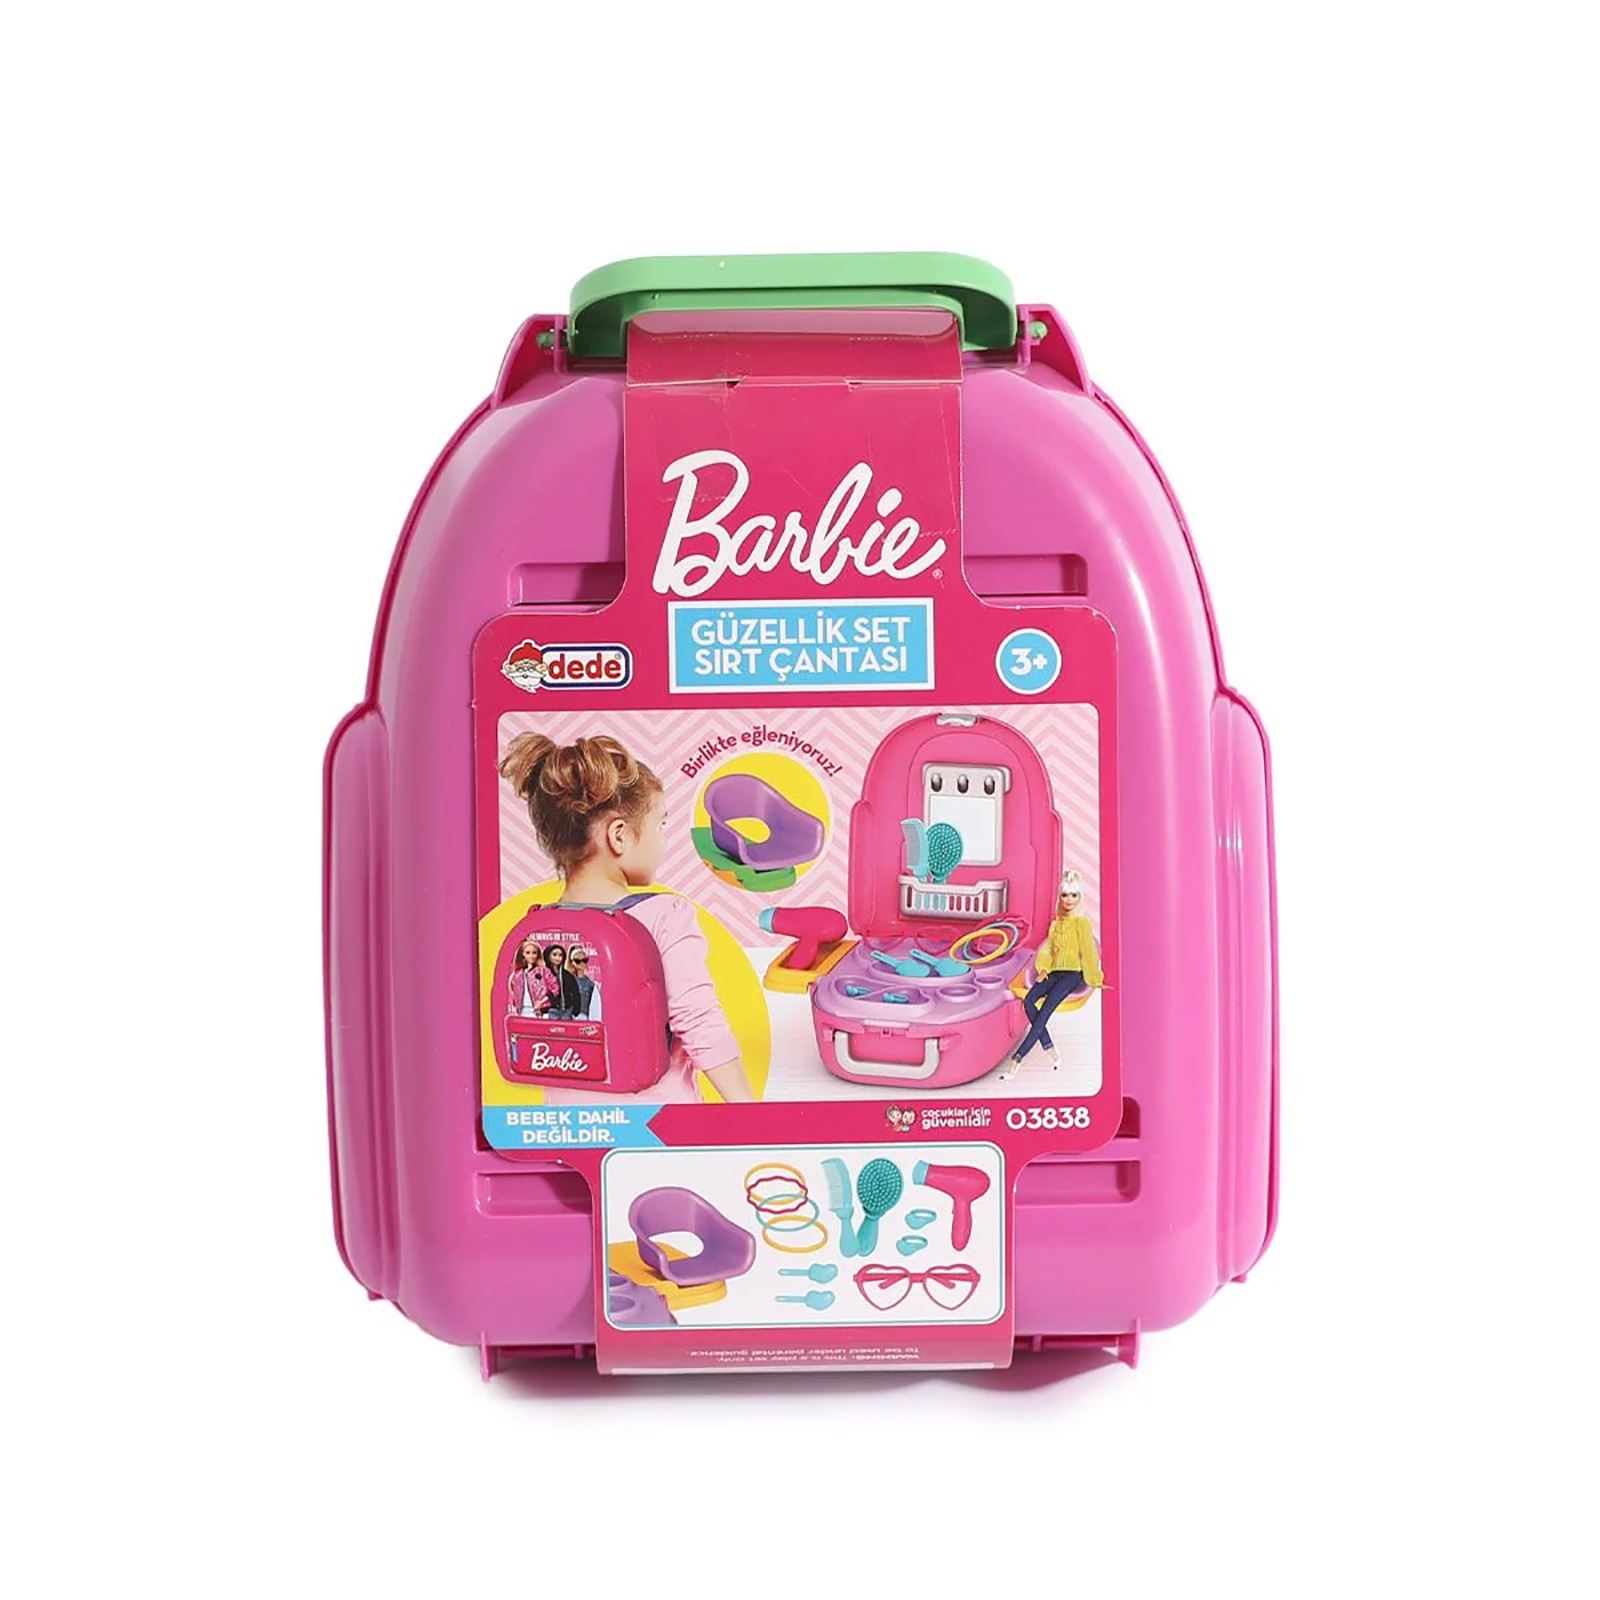 Dede Oyuncak Barbie Güzellik Set Sırt Çantası Pembe